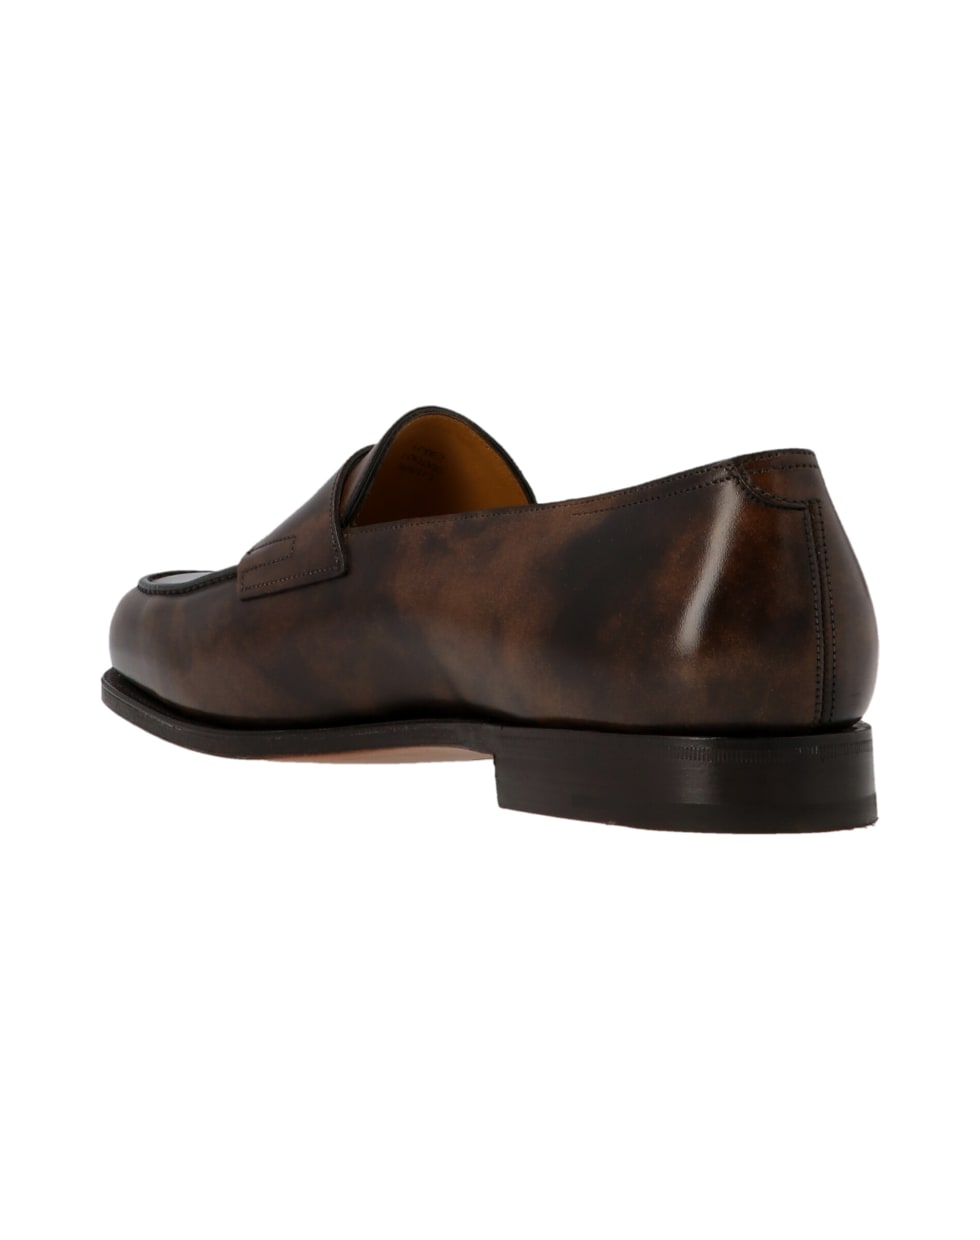 John Lobb 'lopez' Shoes - Brown